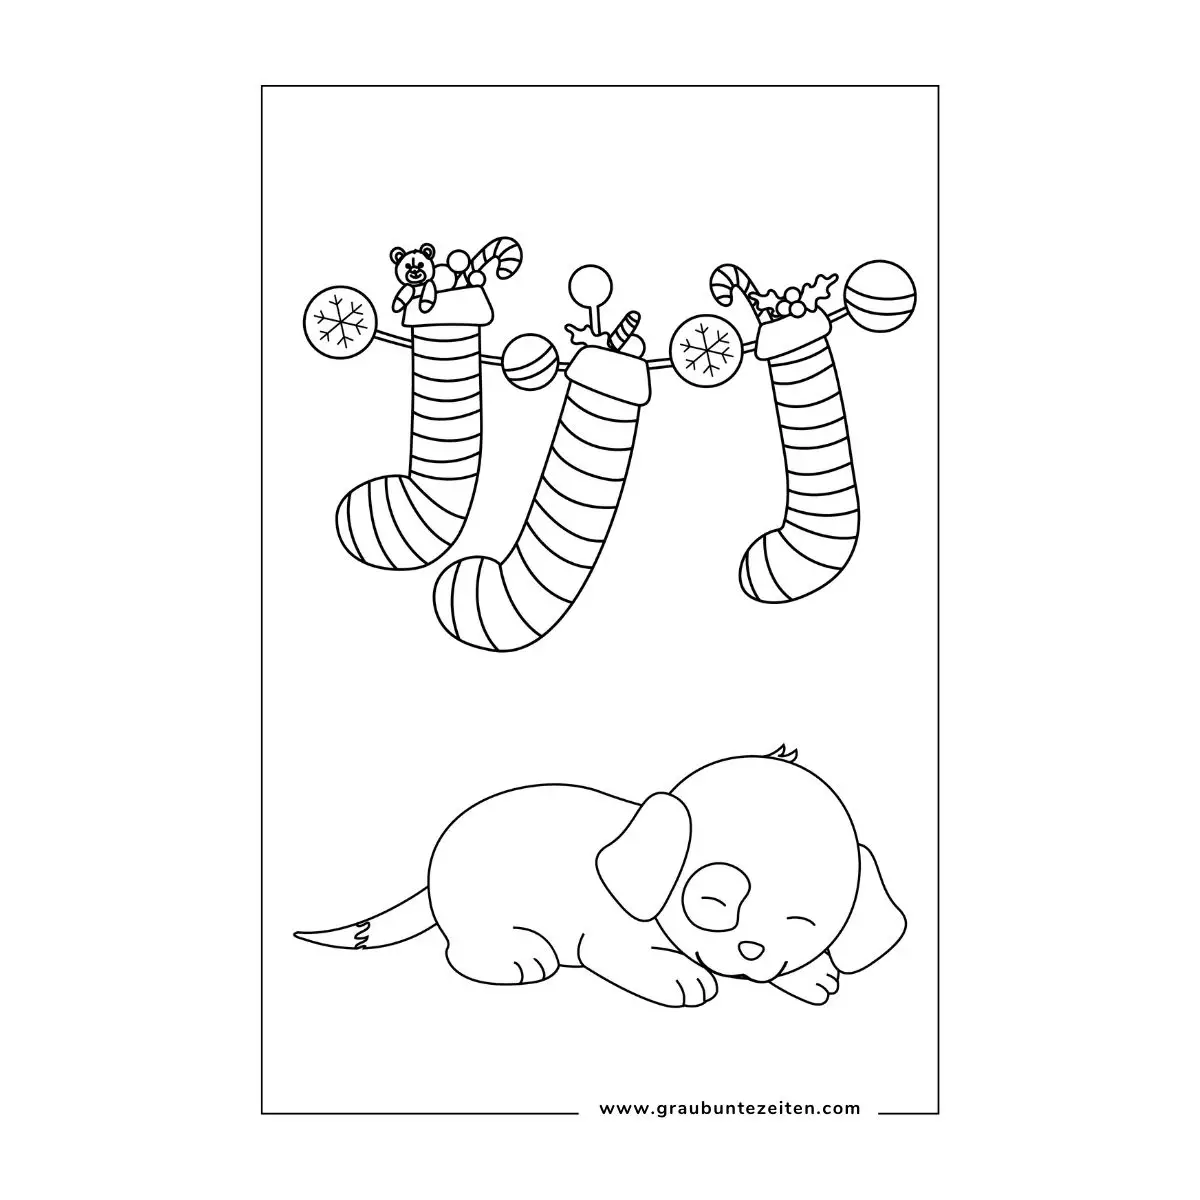 Ausmalbilder Weihnachten Tiere. Ein kleiner Welpe mit Schlappohren schläft unter Weihnachtssocken.